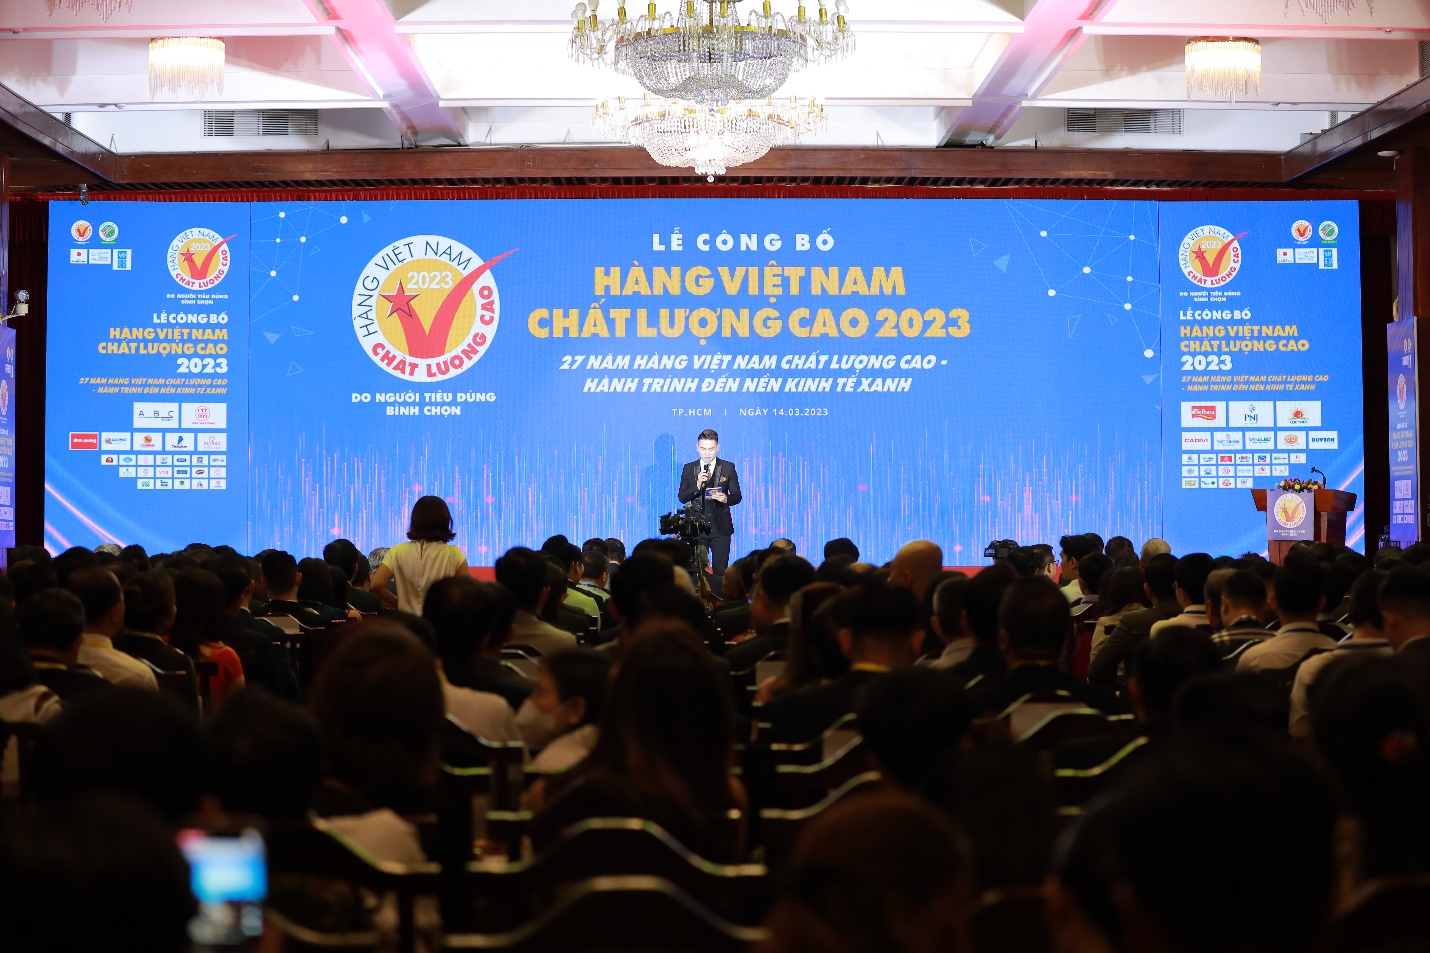 C.P. Việt Nam tiếp tục được vinh danh hàng Việt Nam chất lượng cao 2023 - Ảnh 1.